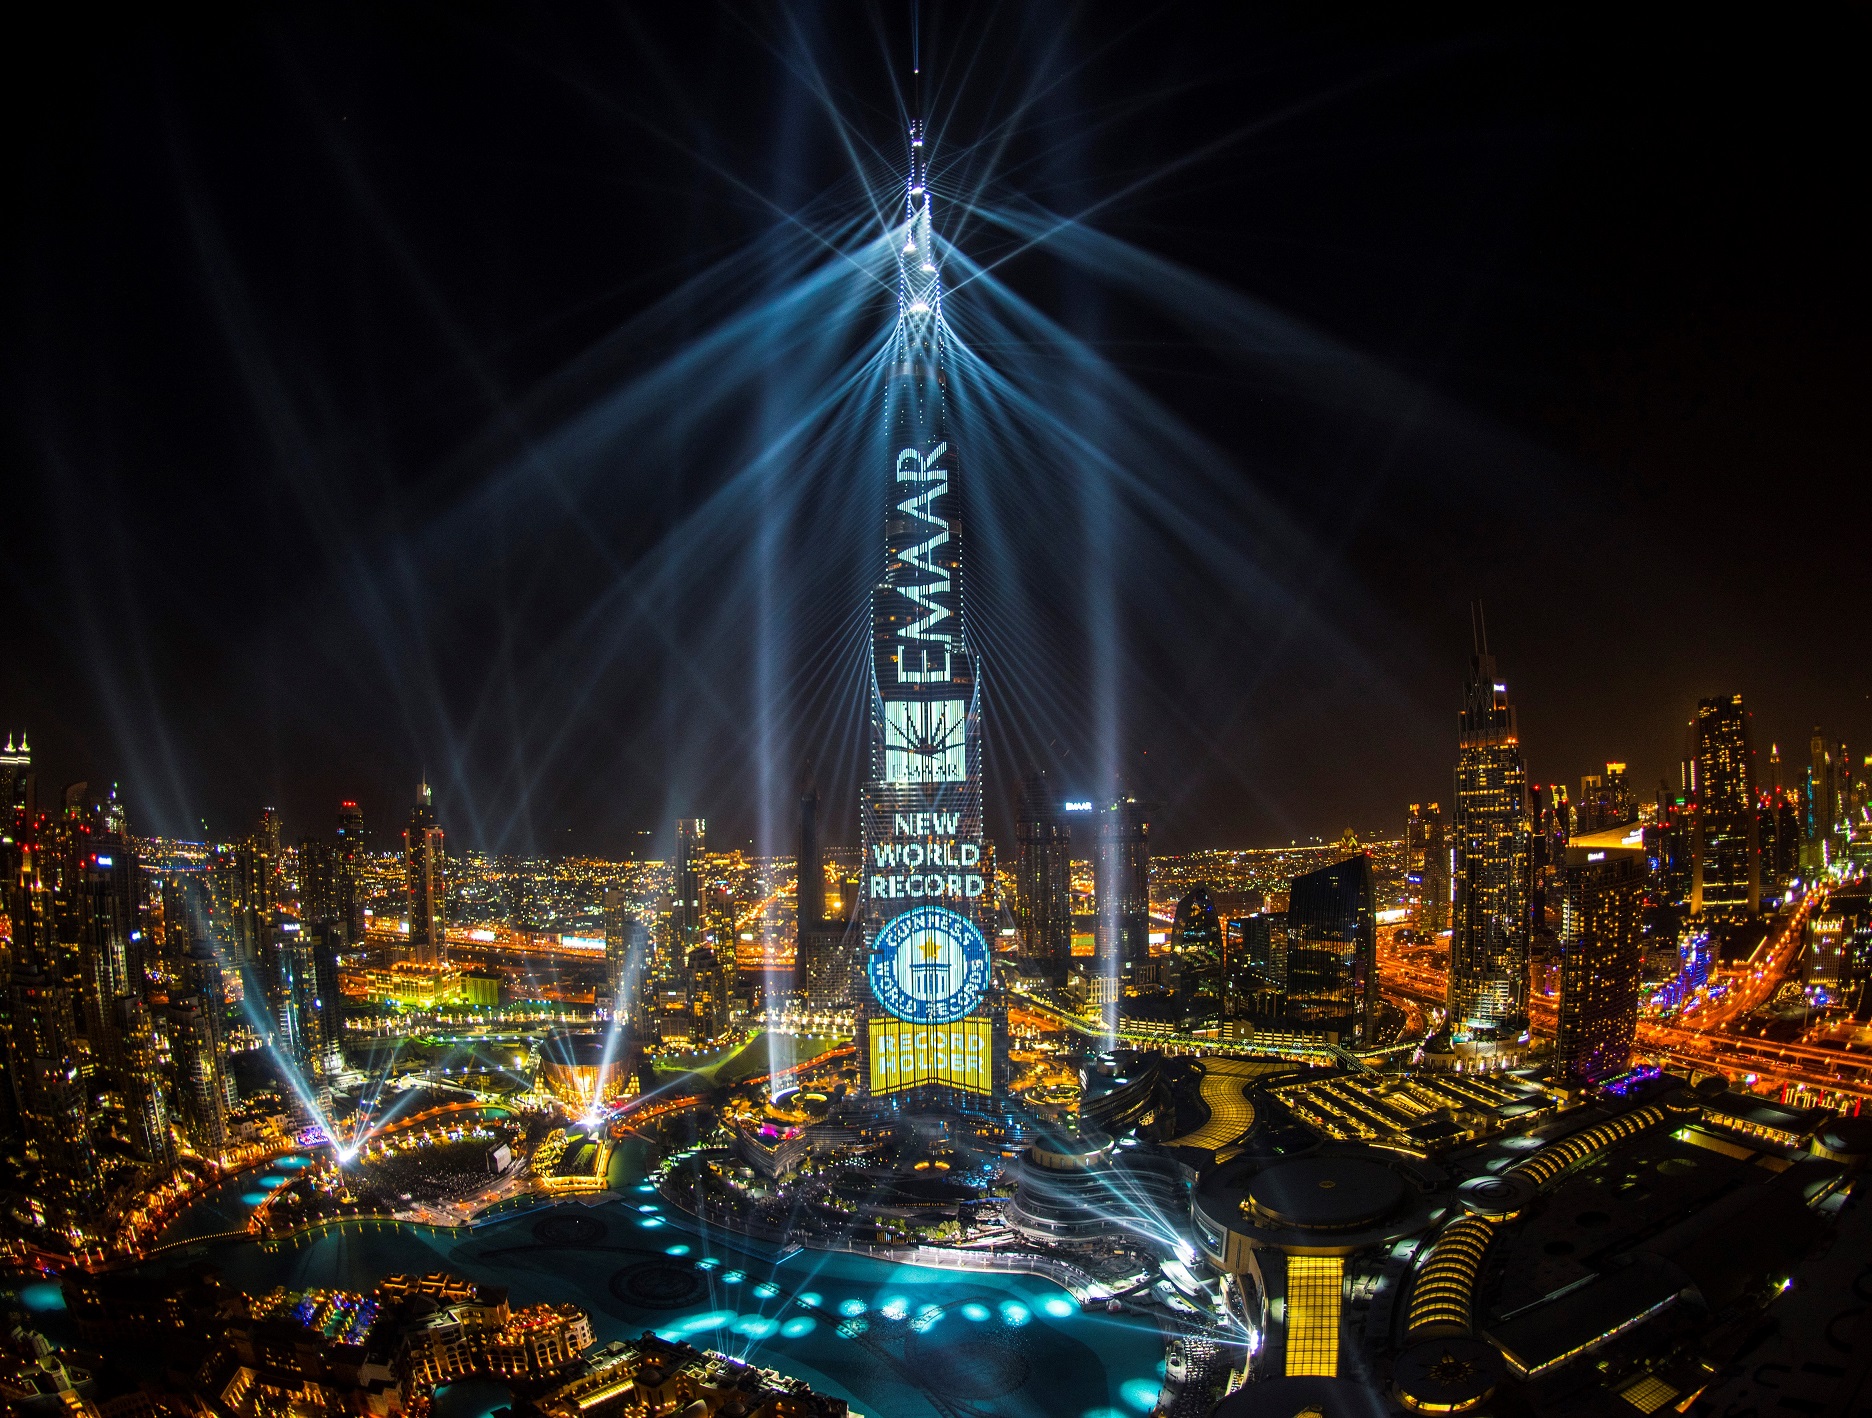 برج خليفة يسجل رقماً قياسياً جديداً في سجل غينيس للأرقام القياسية من خلال عرض ضوئي شديد الابهار